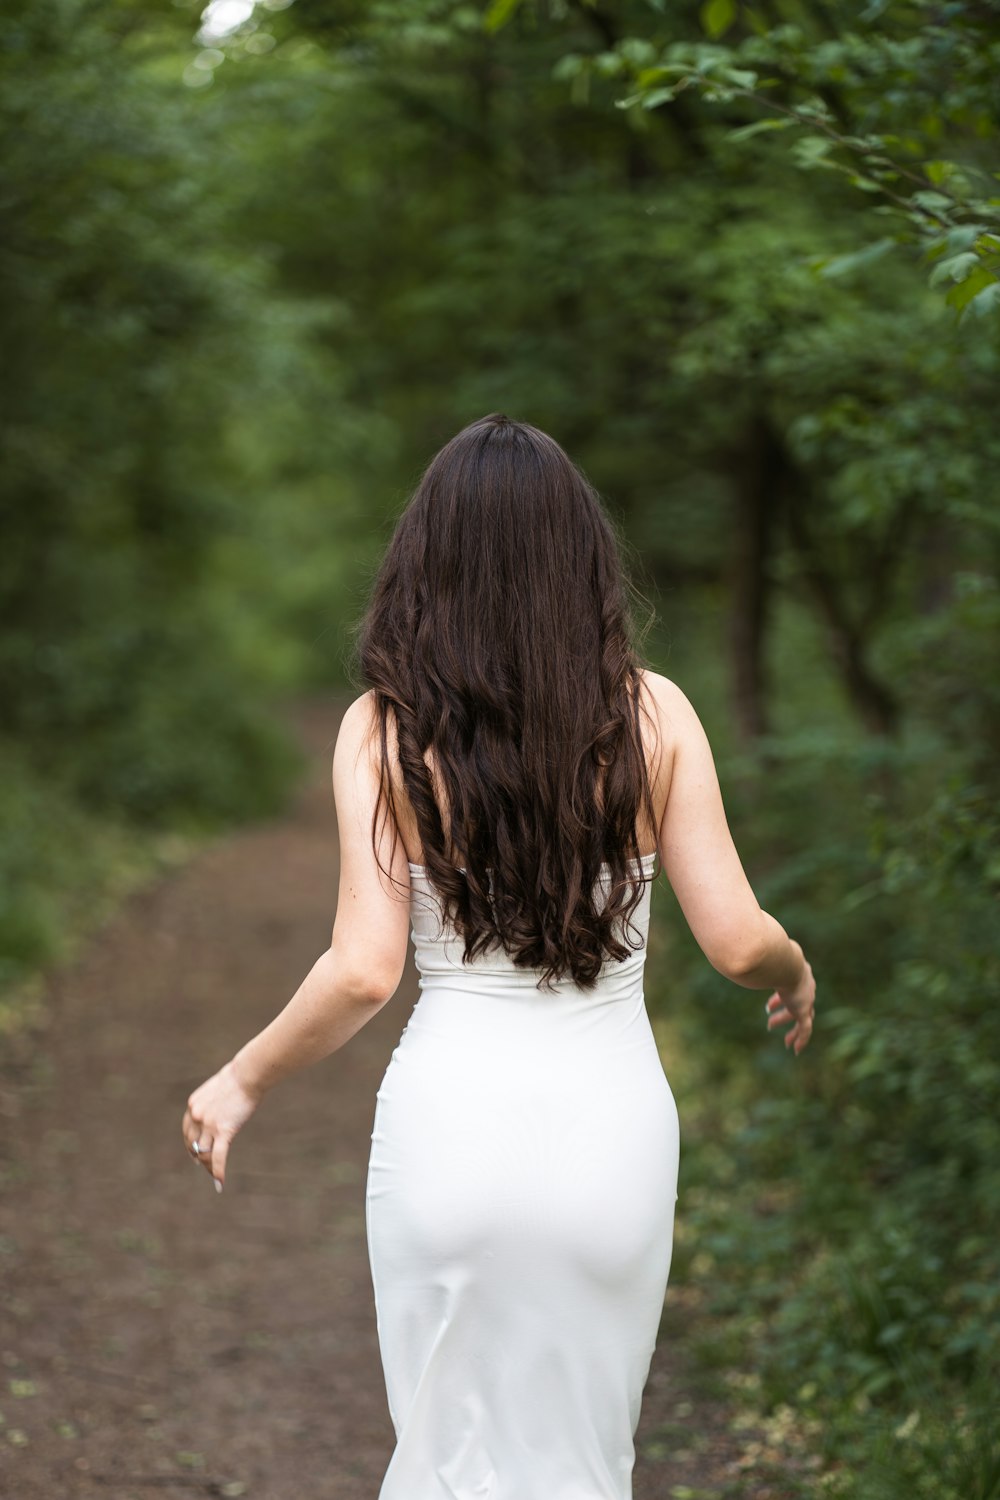 a woman in a white dress walking down a path